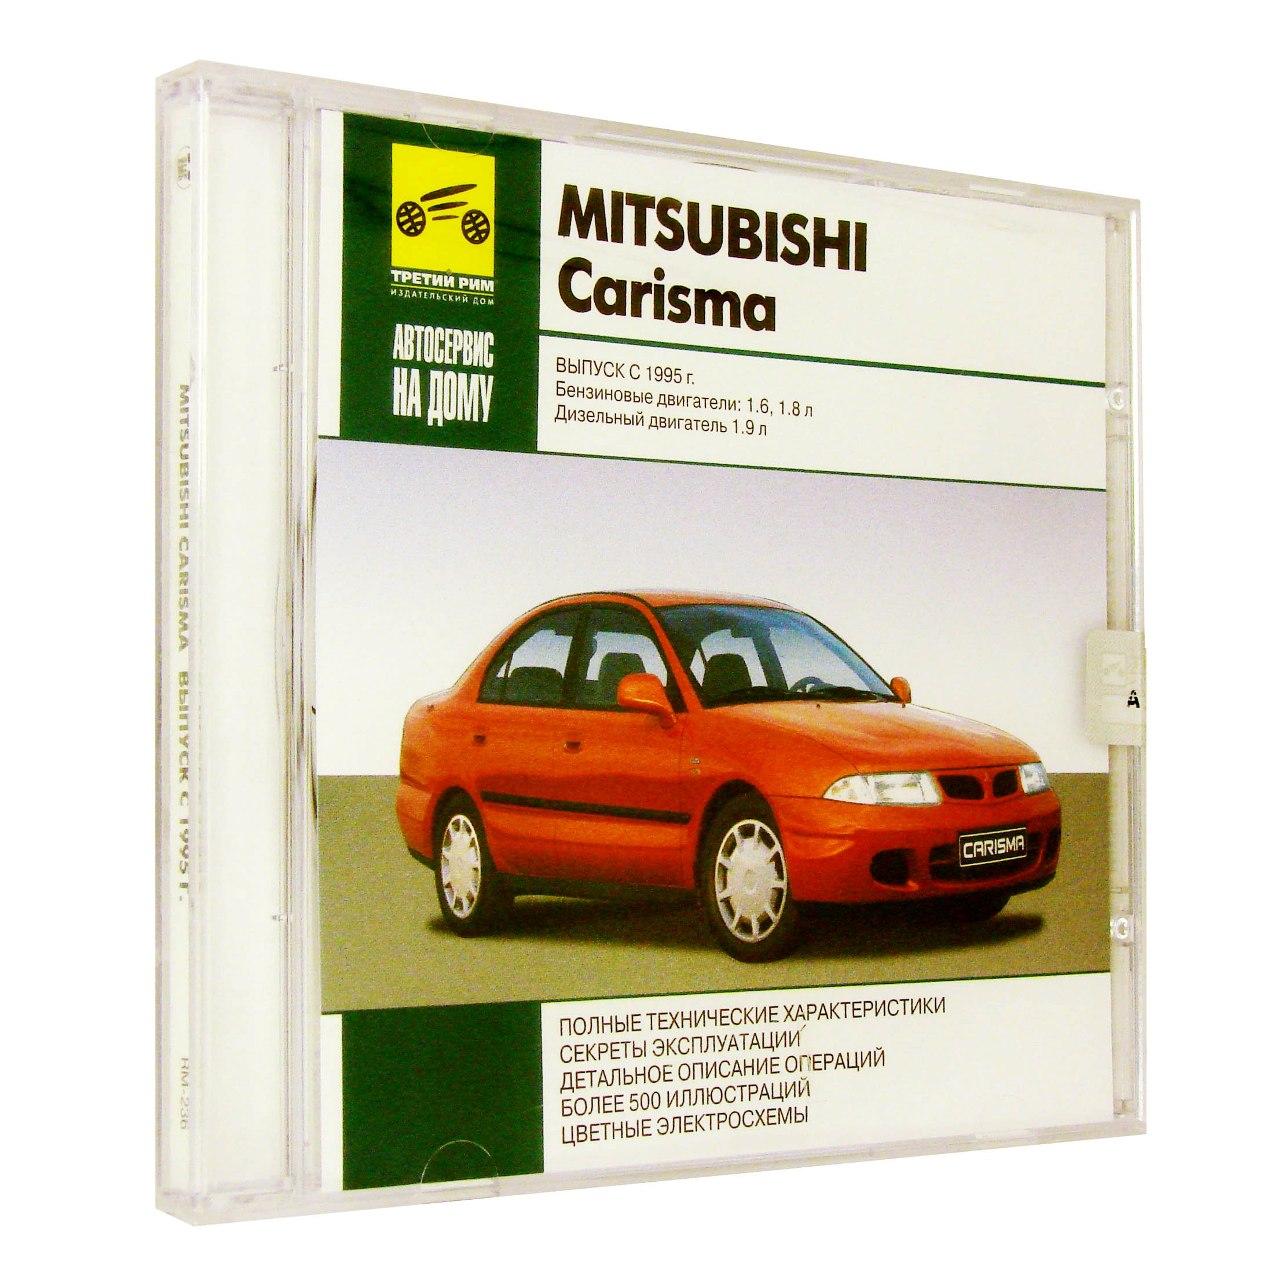 Компьютерный компакт-диск Mitsubishi Carisma Выпуск с 1995: Автосервис на дому (ПК), фирма "RMG Multimedia", 1CD